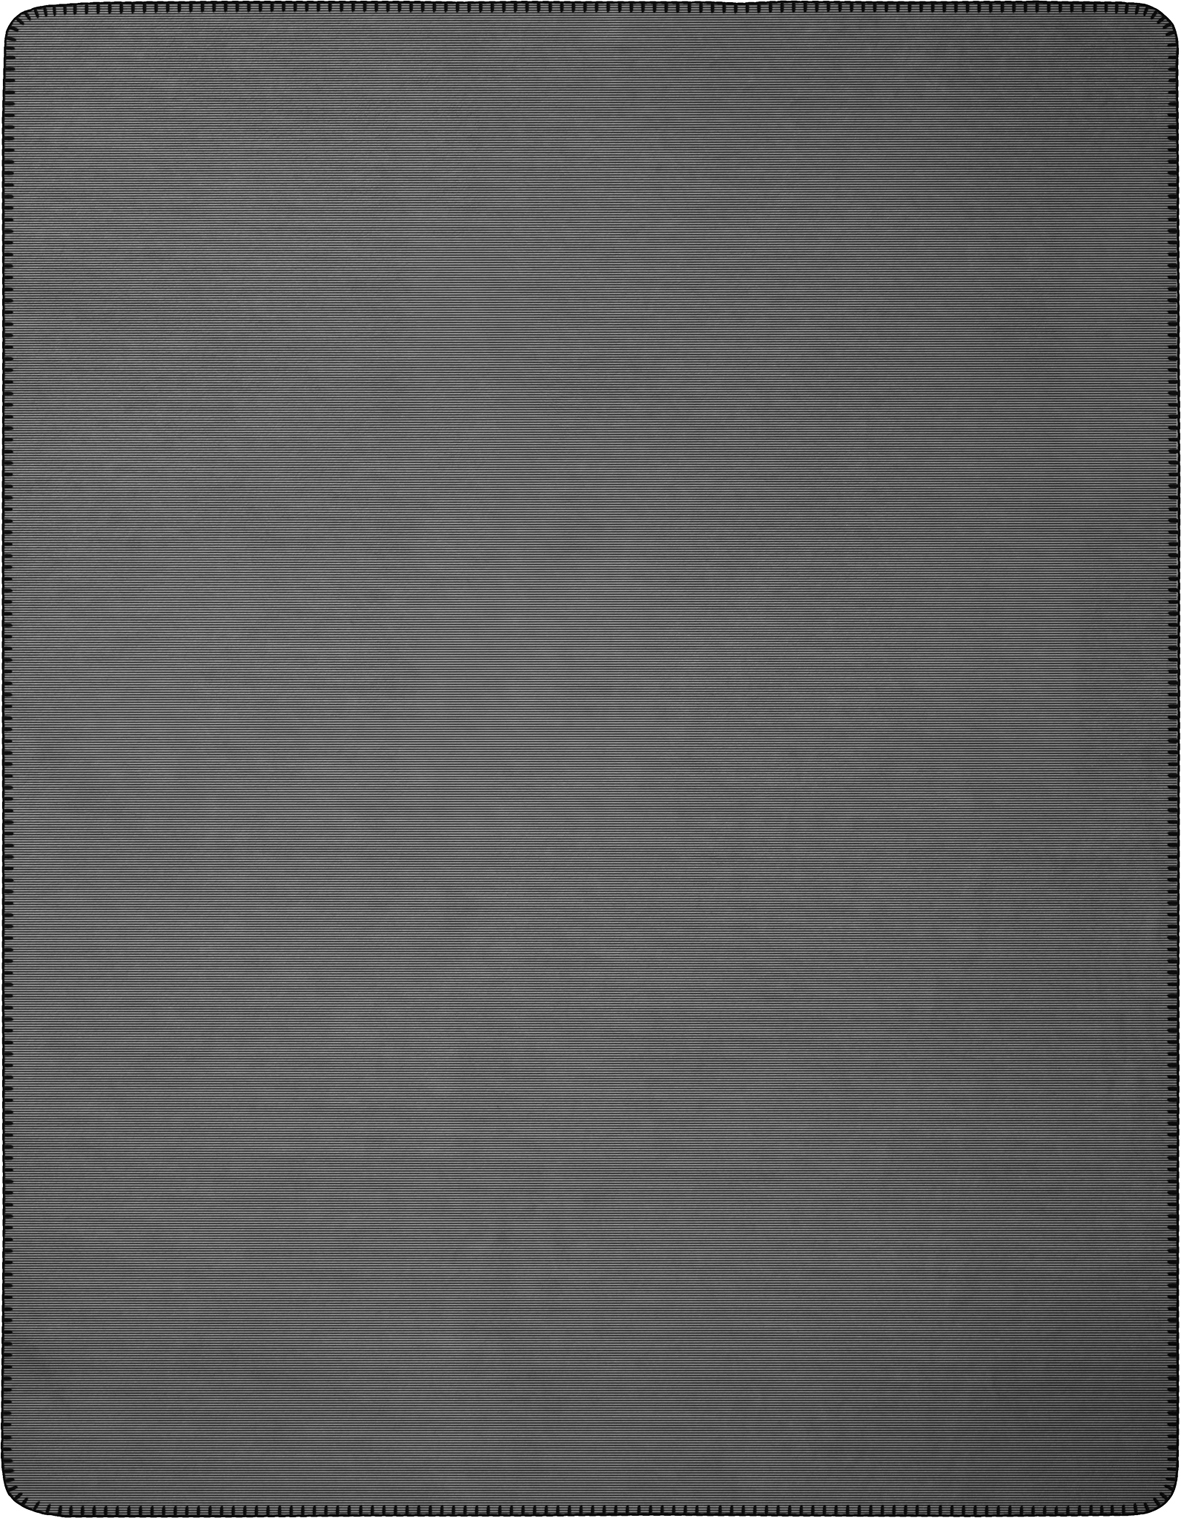 Wohndecke "Melange Doubleface" aus Baumwollmischgewebe in 150x200 cm in Anthrazit-Silber - Vorderseite